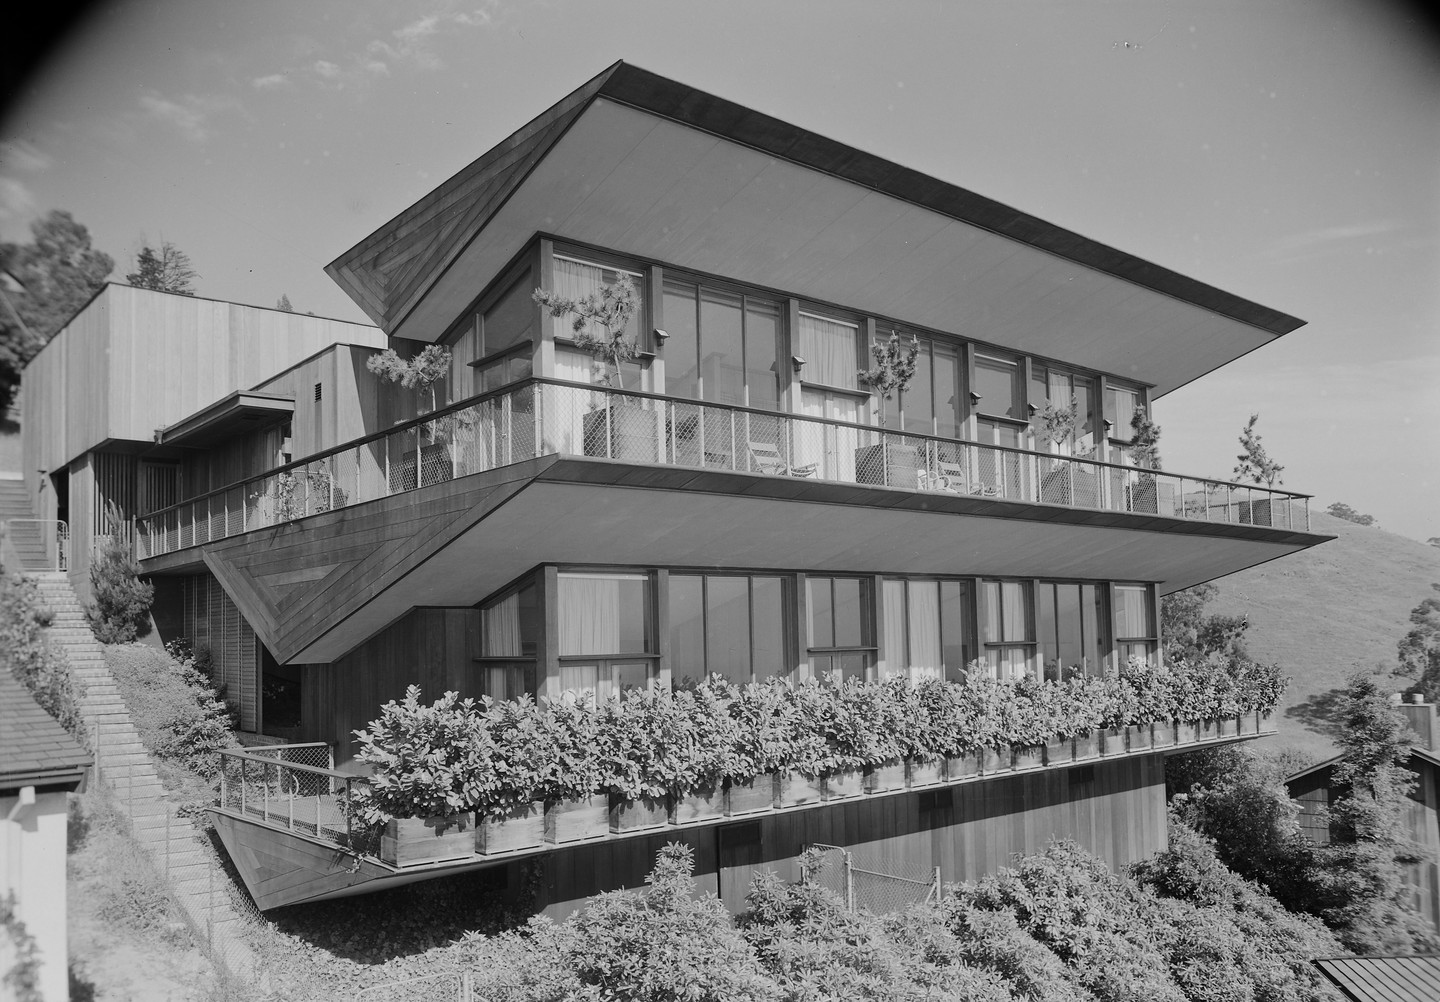 Harwell Hamilton Harris, Weston Havens House, Berkeley, 1940. Photo: Maynard L. Parker. Courtesy of The Huntington Library, San Marino, California.